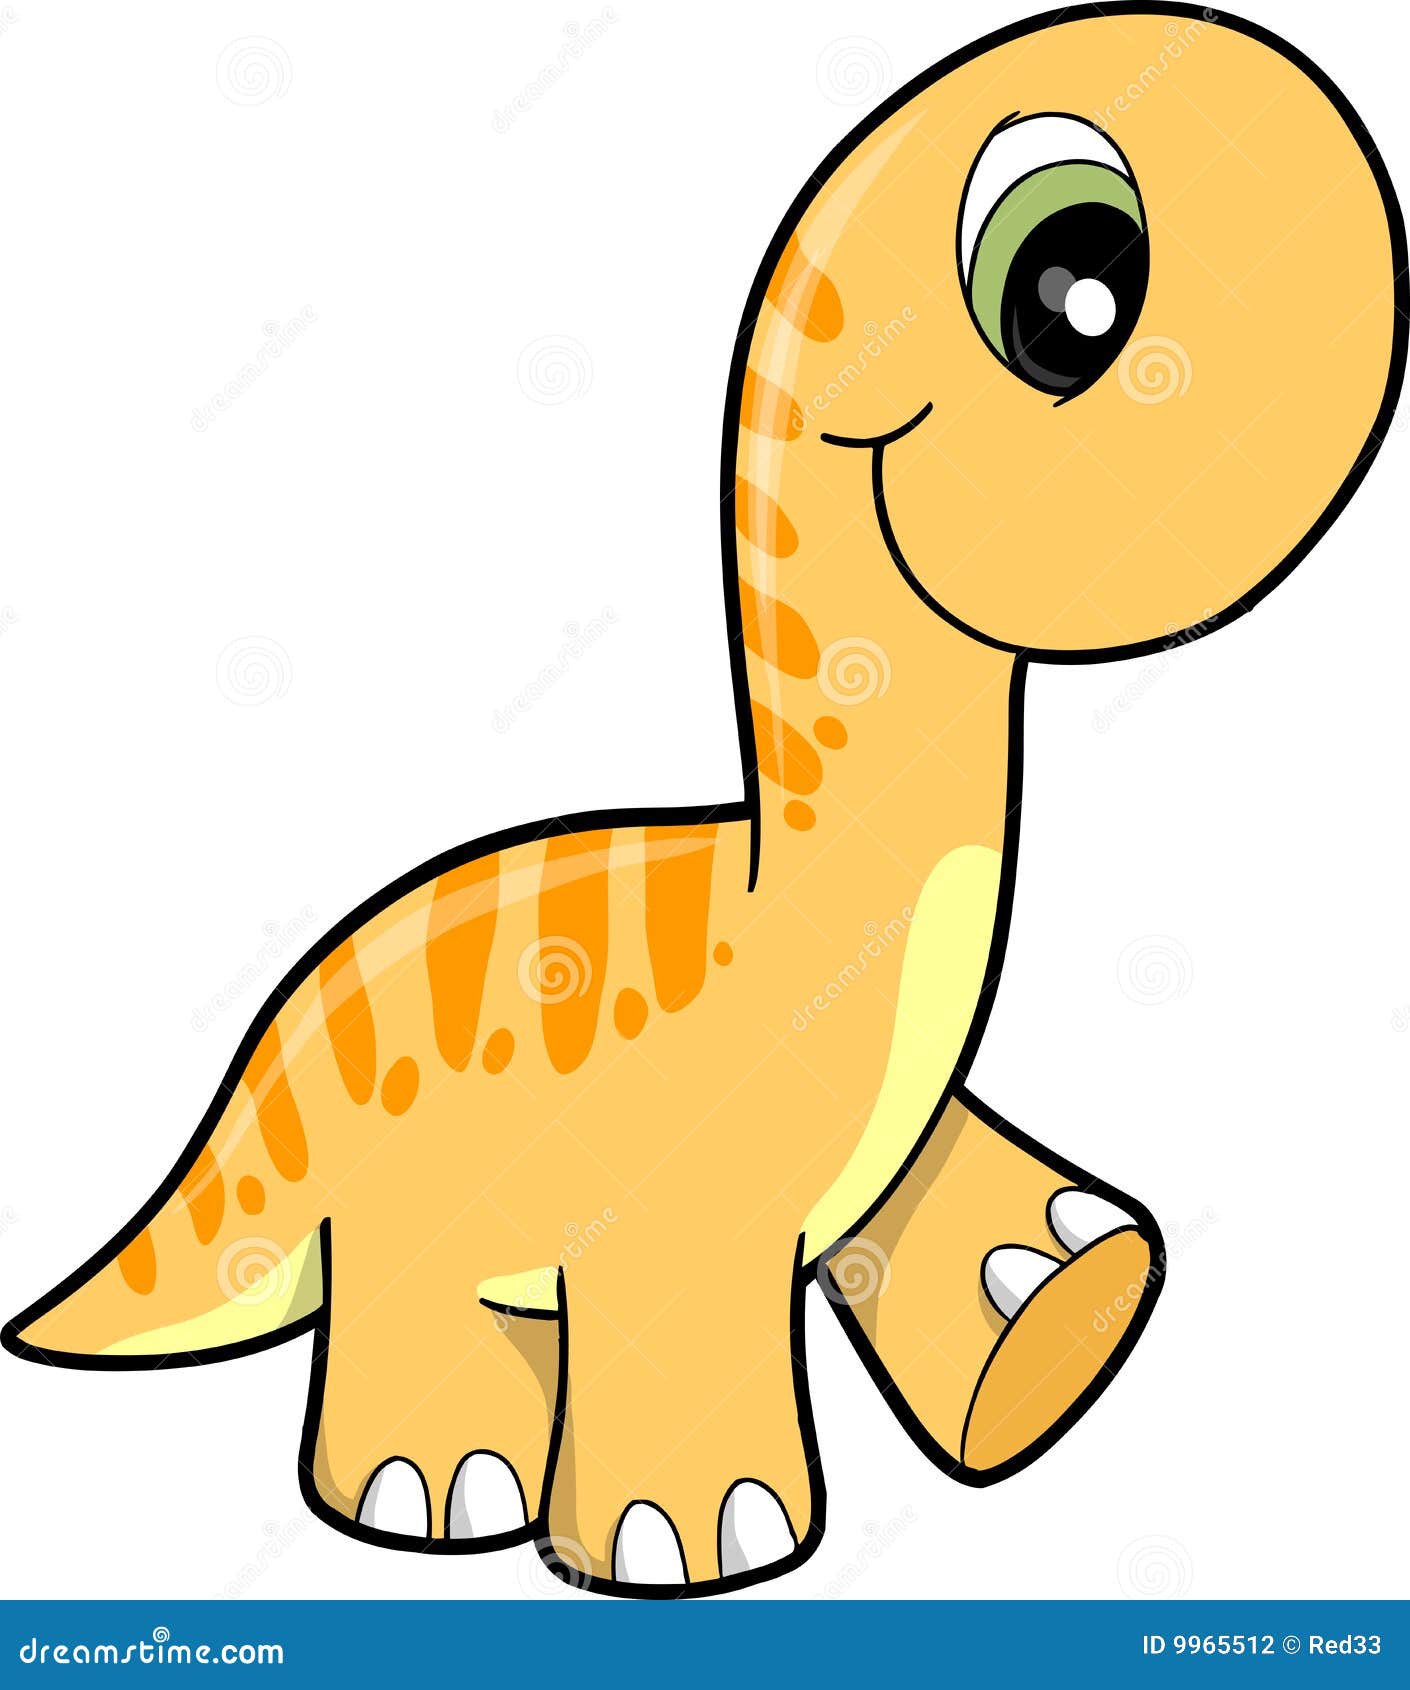 Cute Dinosaur Vector Illustration Stock Vector ...